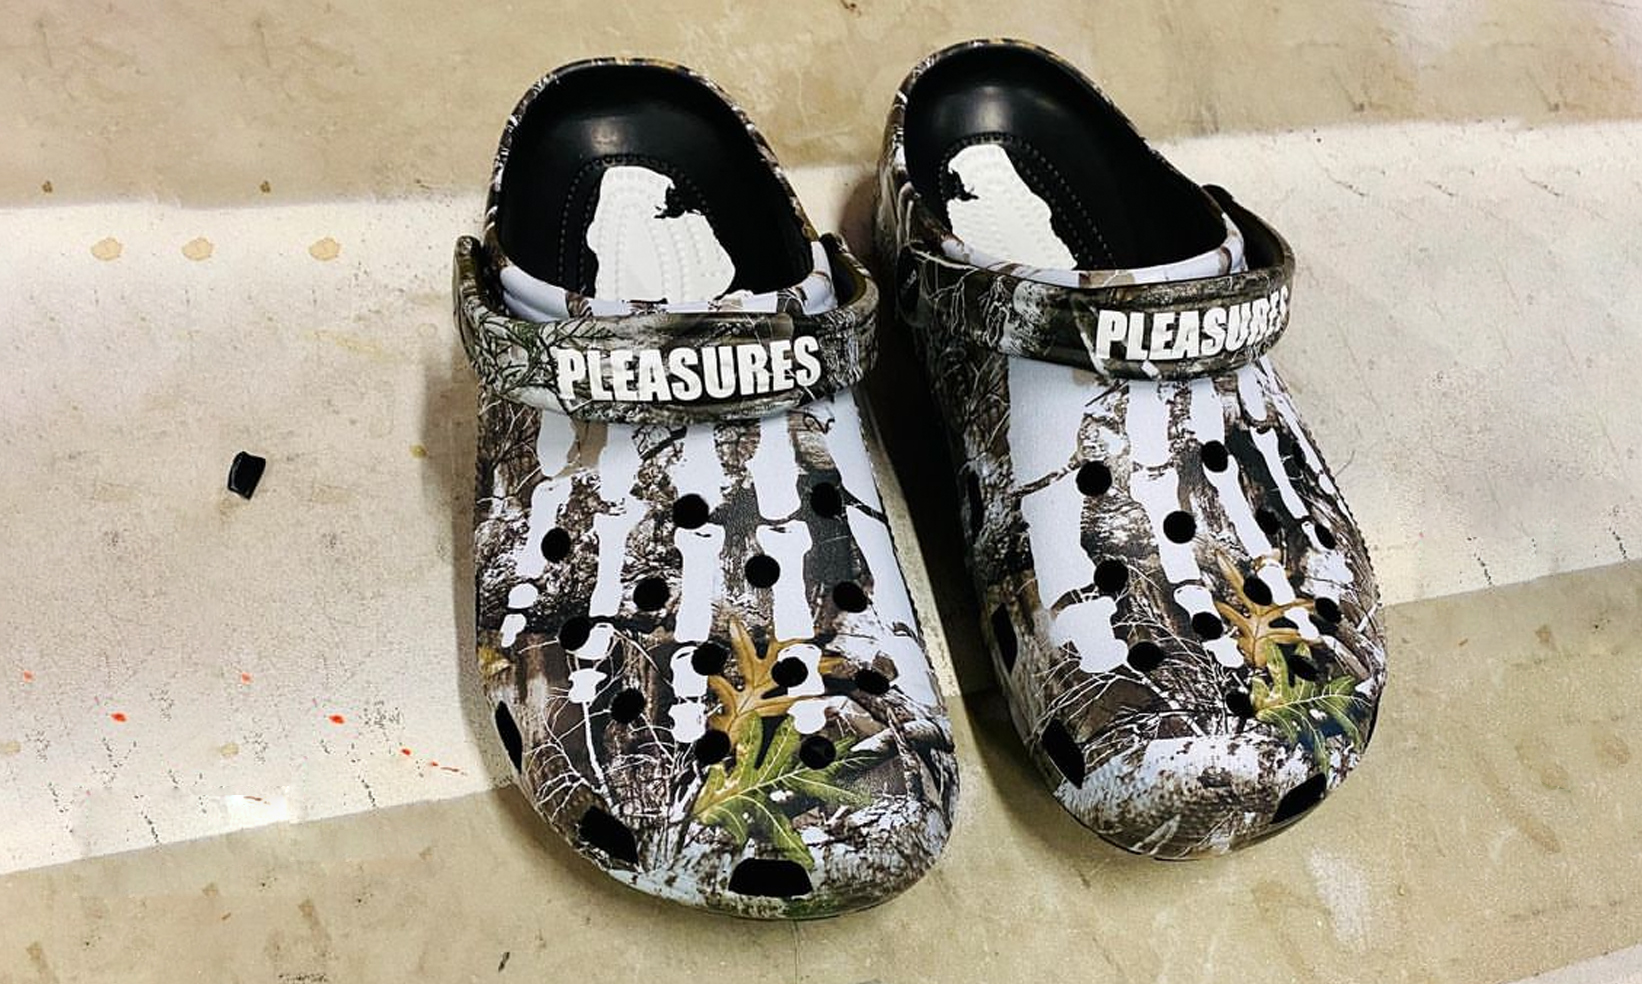 疑似 PLEASURES x Crocs 联名鞋款曝光